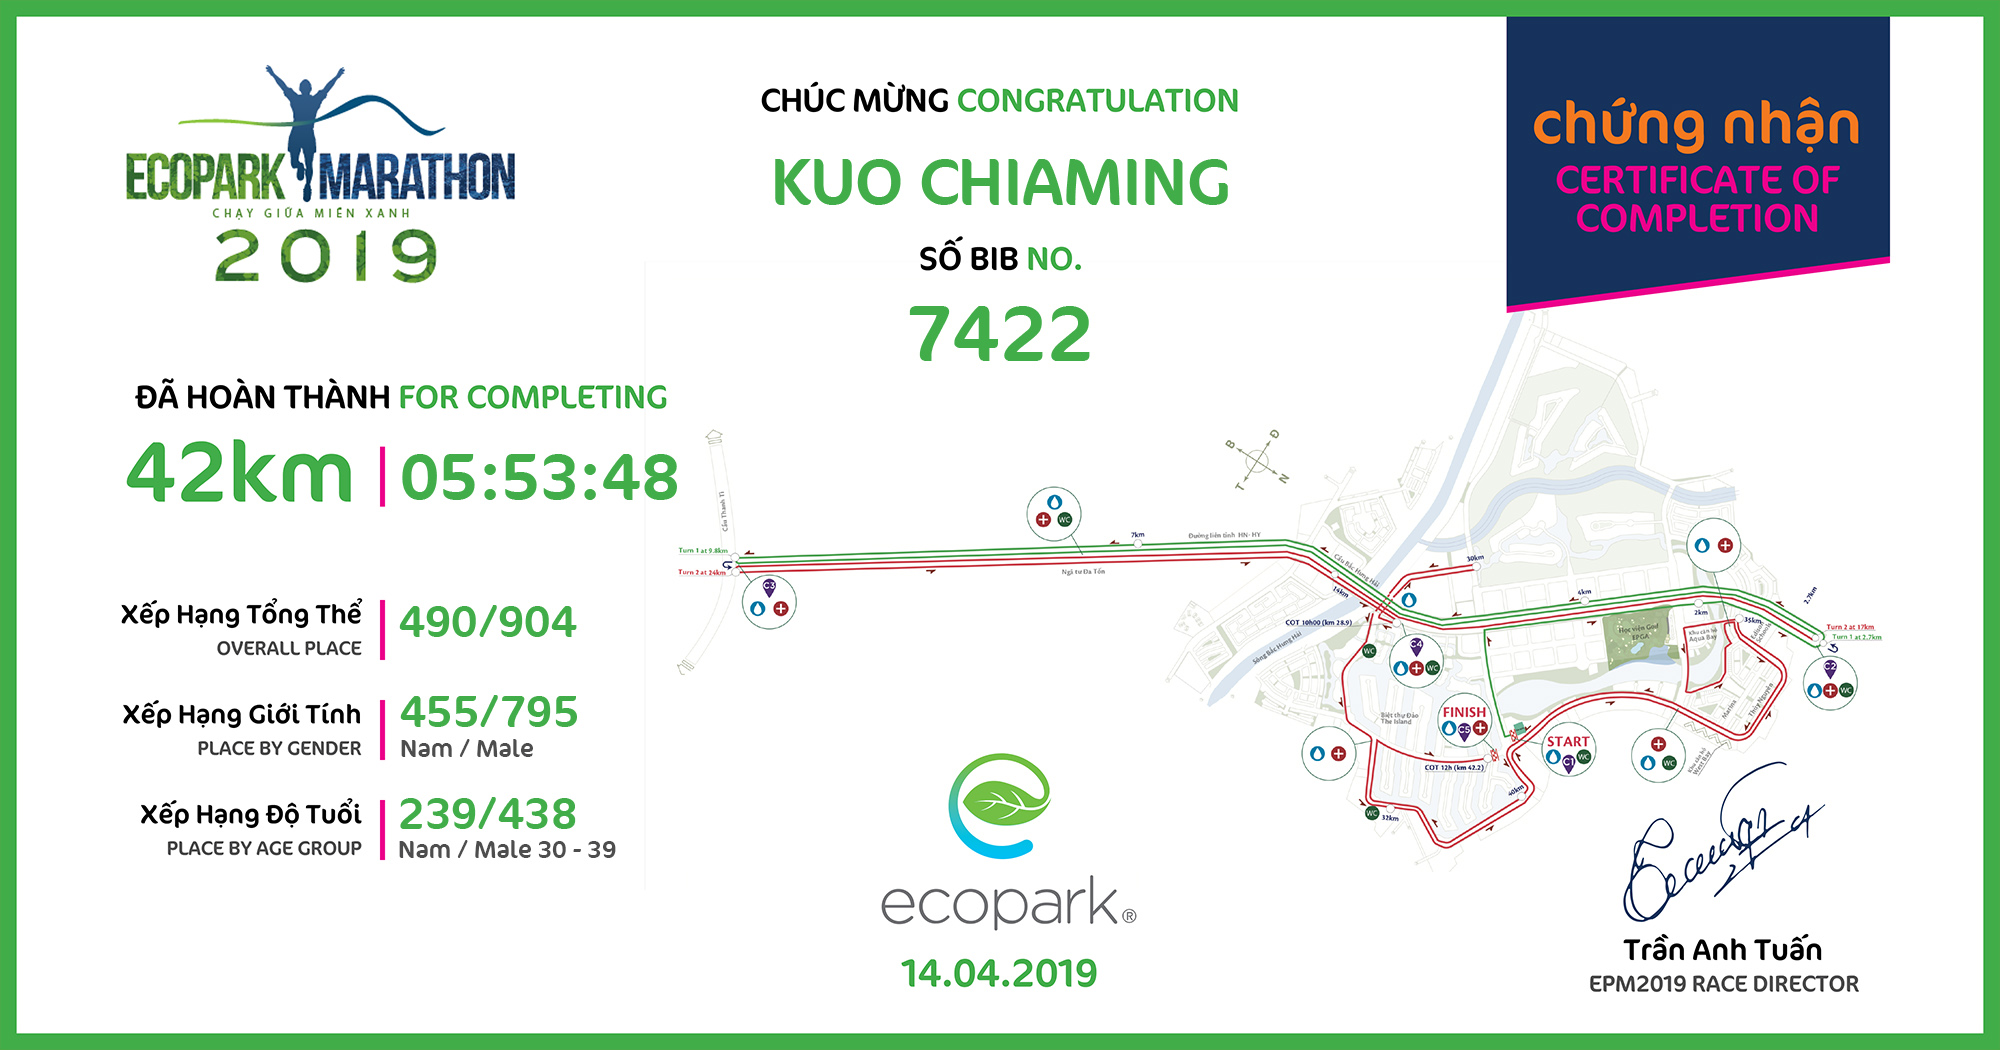 7422 - Kuo Chiaming